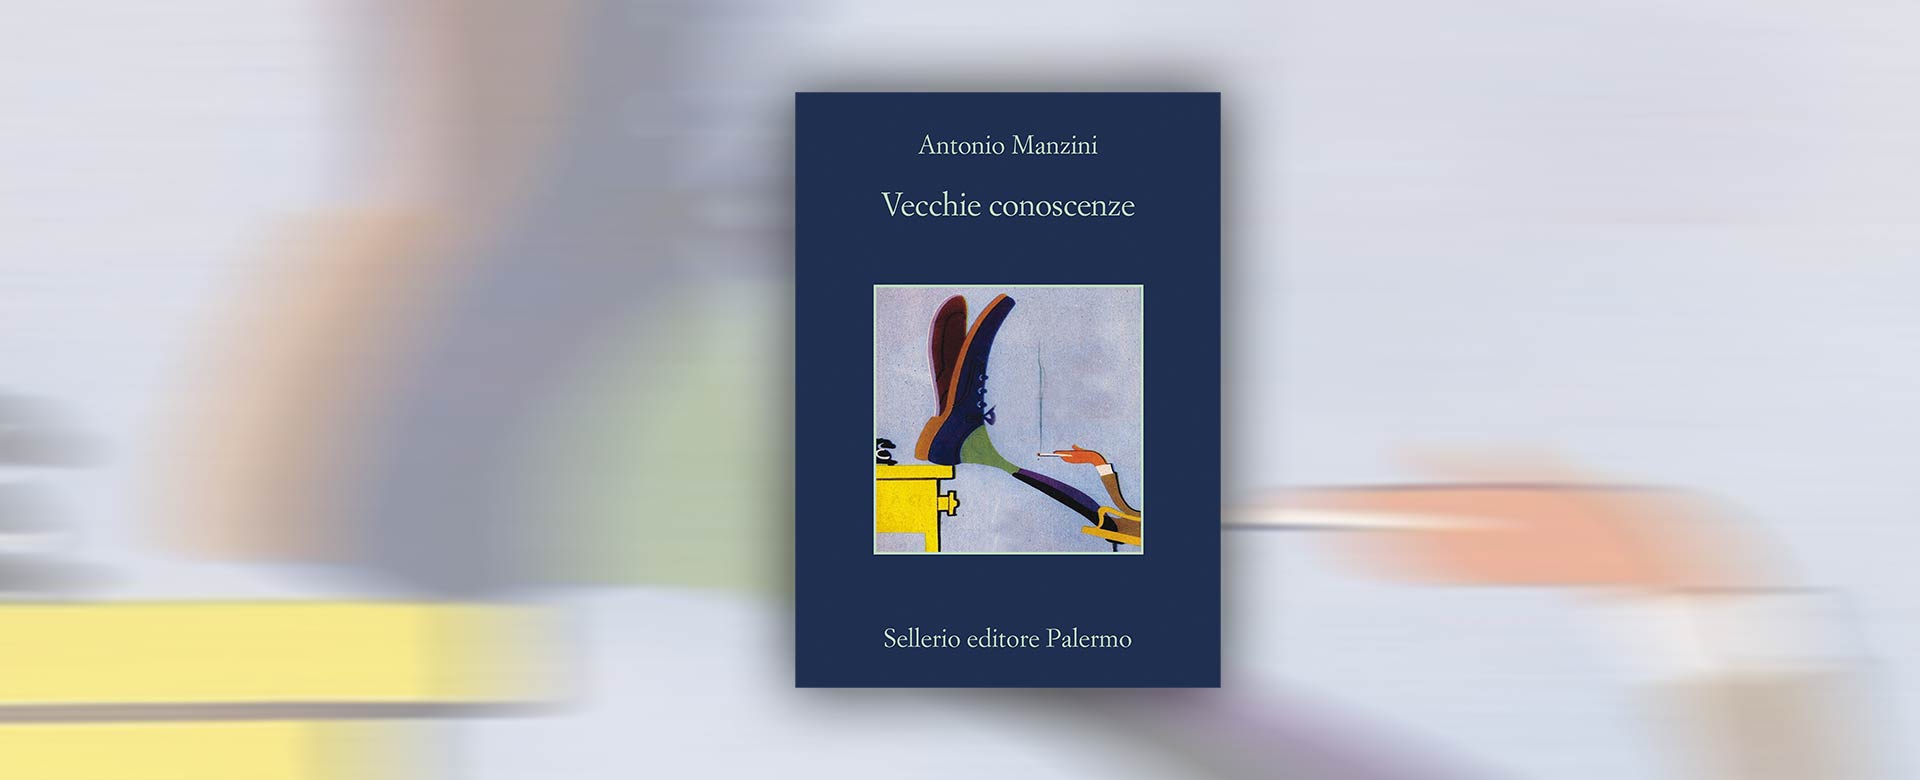 Immagine del libro Vecchie conoscenze di Antonio Manzini